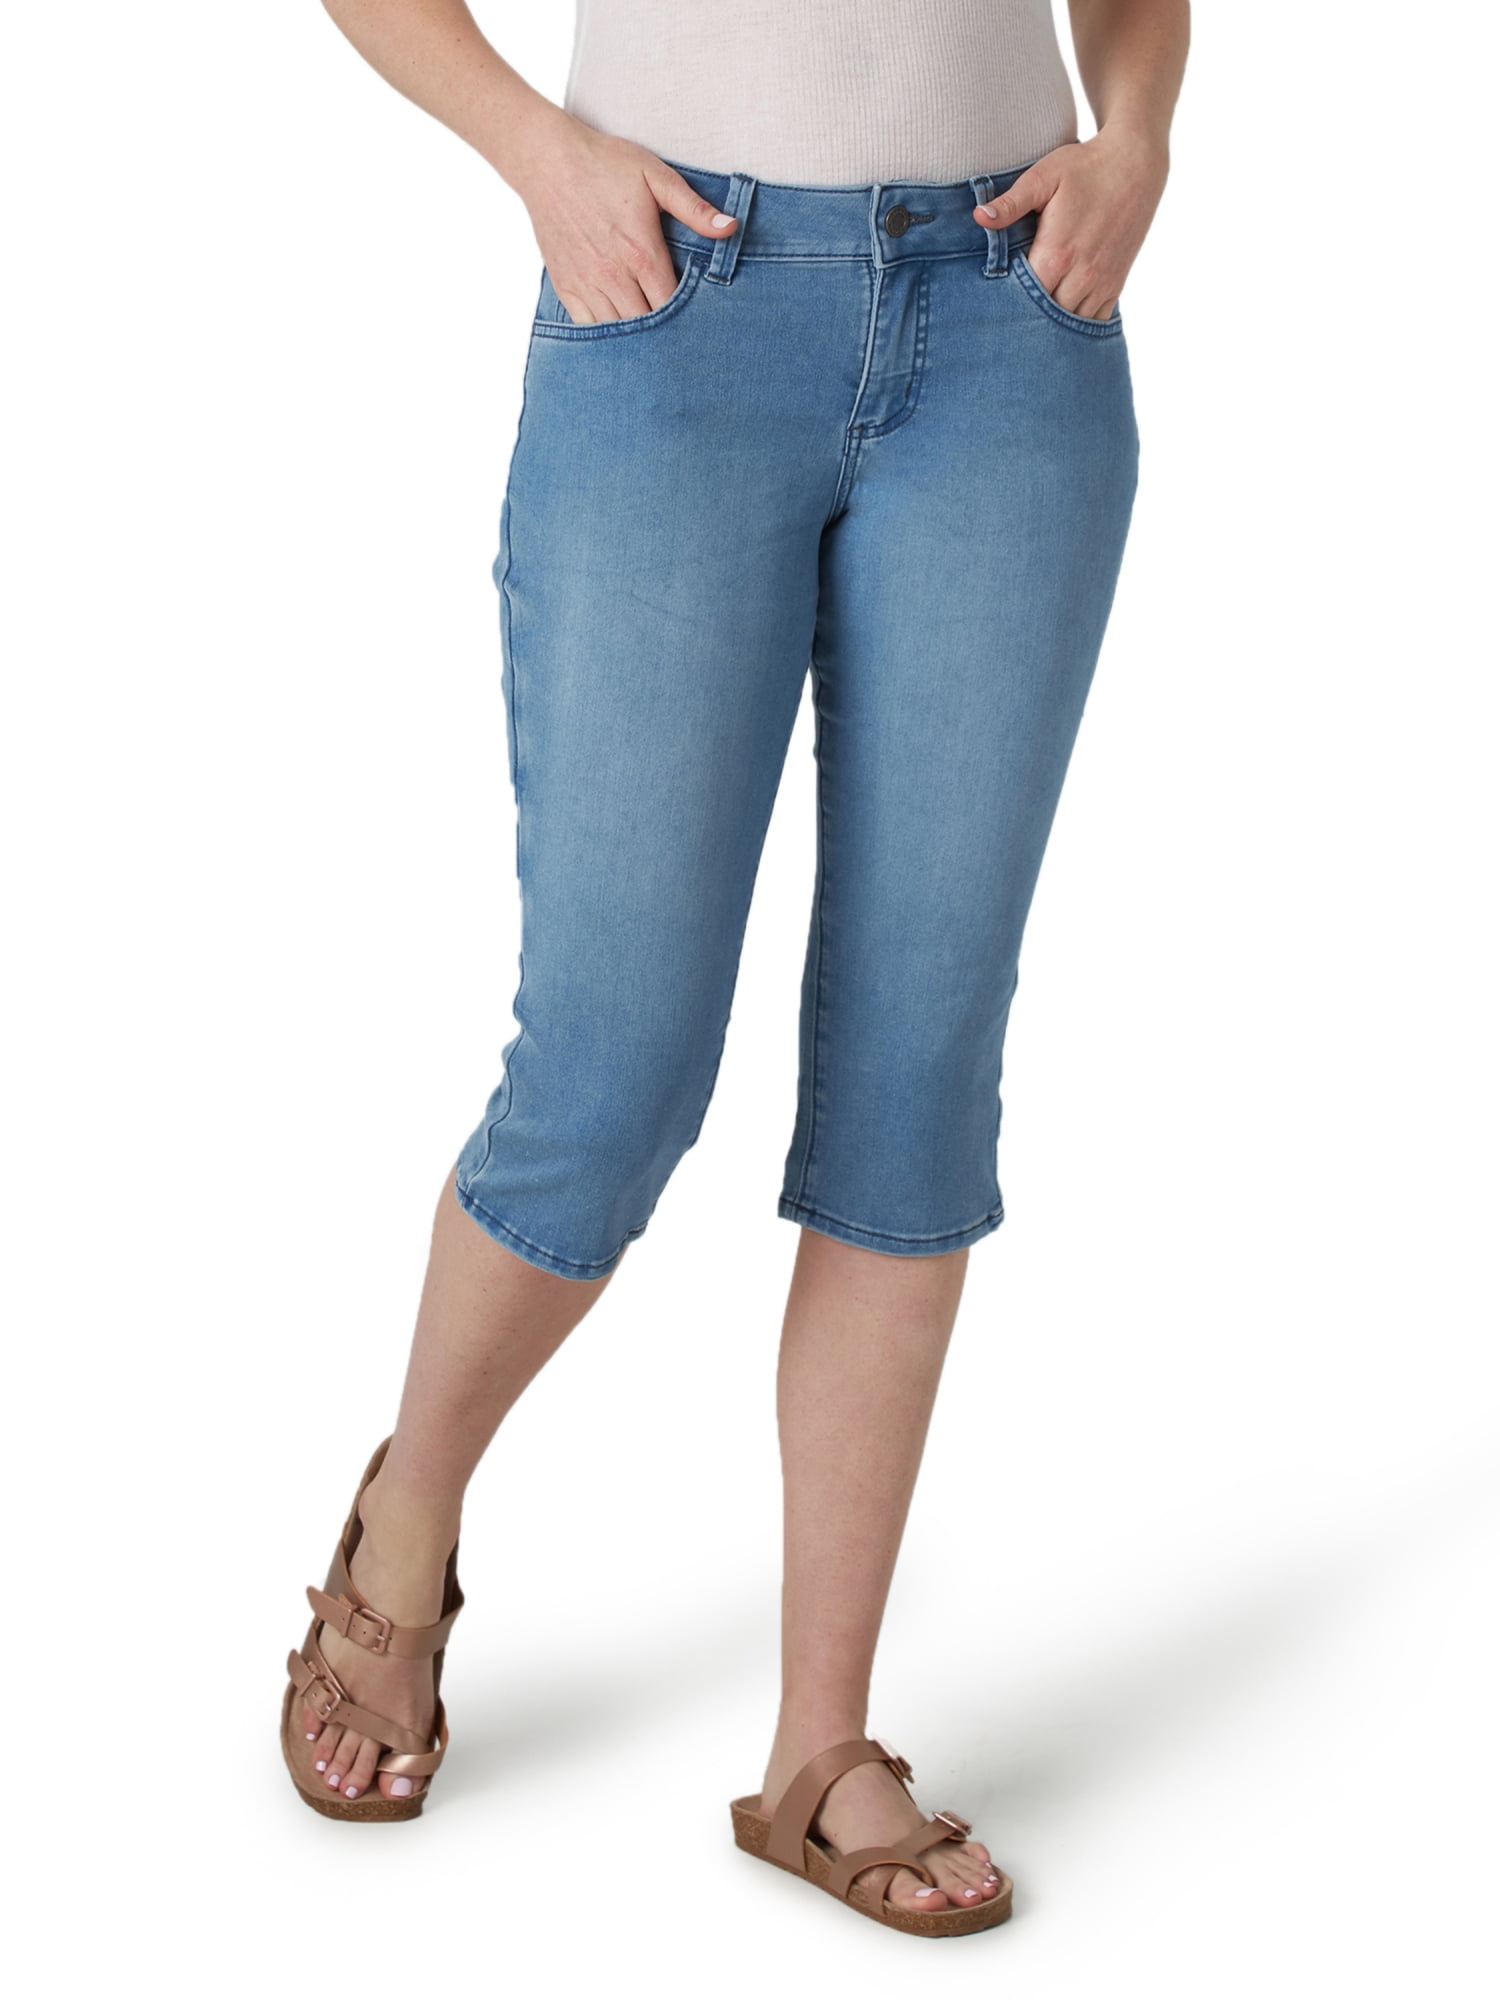 D jeans stretch jean capris womens size 6